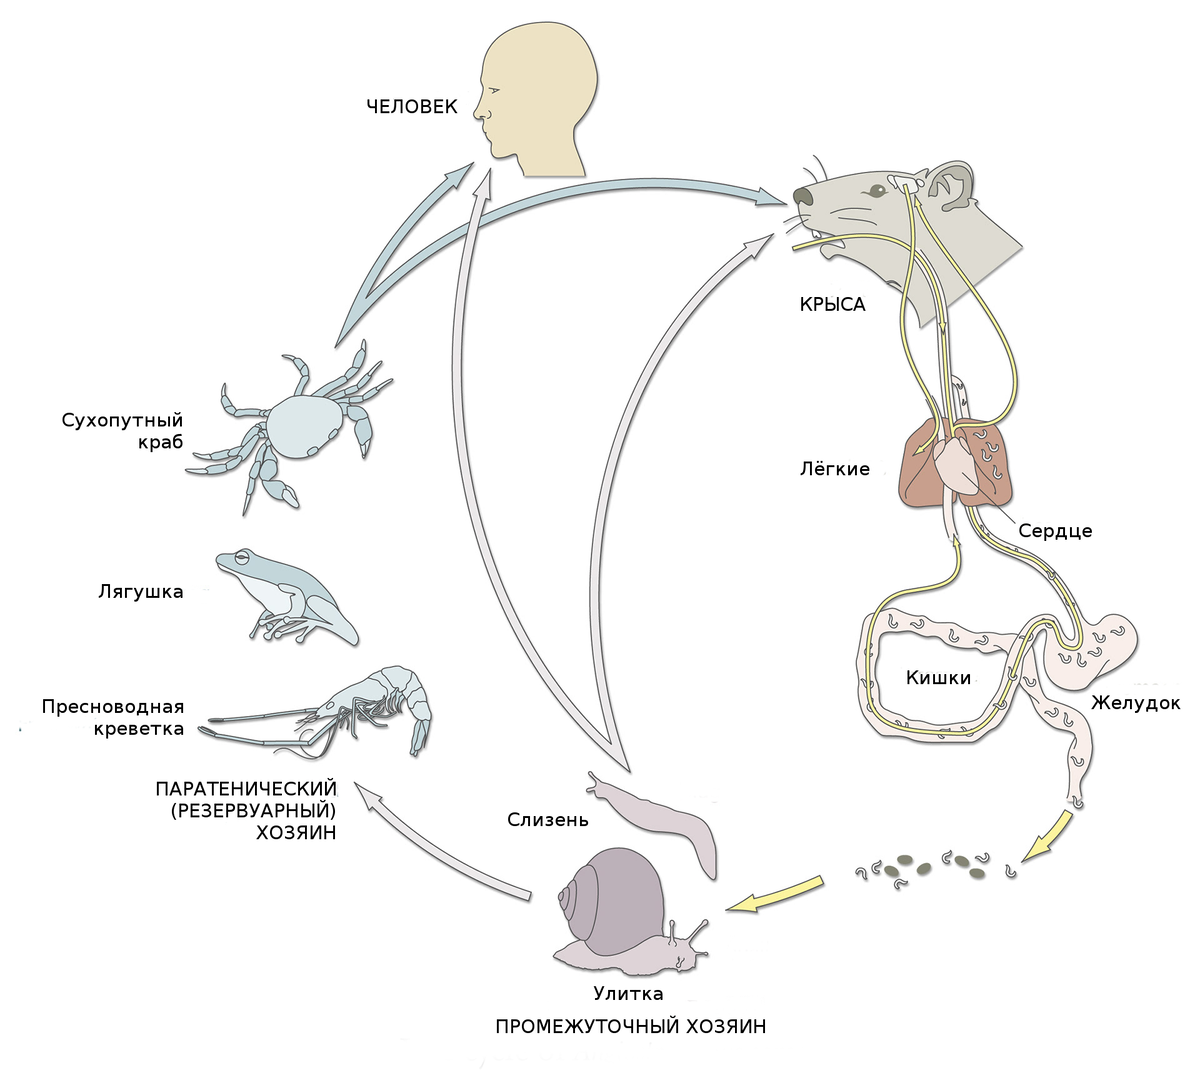 Жизненный цикл легочного. Жизненный цикл карликового цепня схема. СЛИЗЕНЬ цикл развития. Жизненный цикл кальмара схема. Жизненный цикл крысиного цепня.